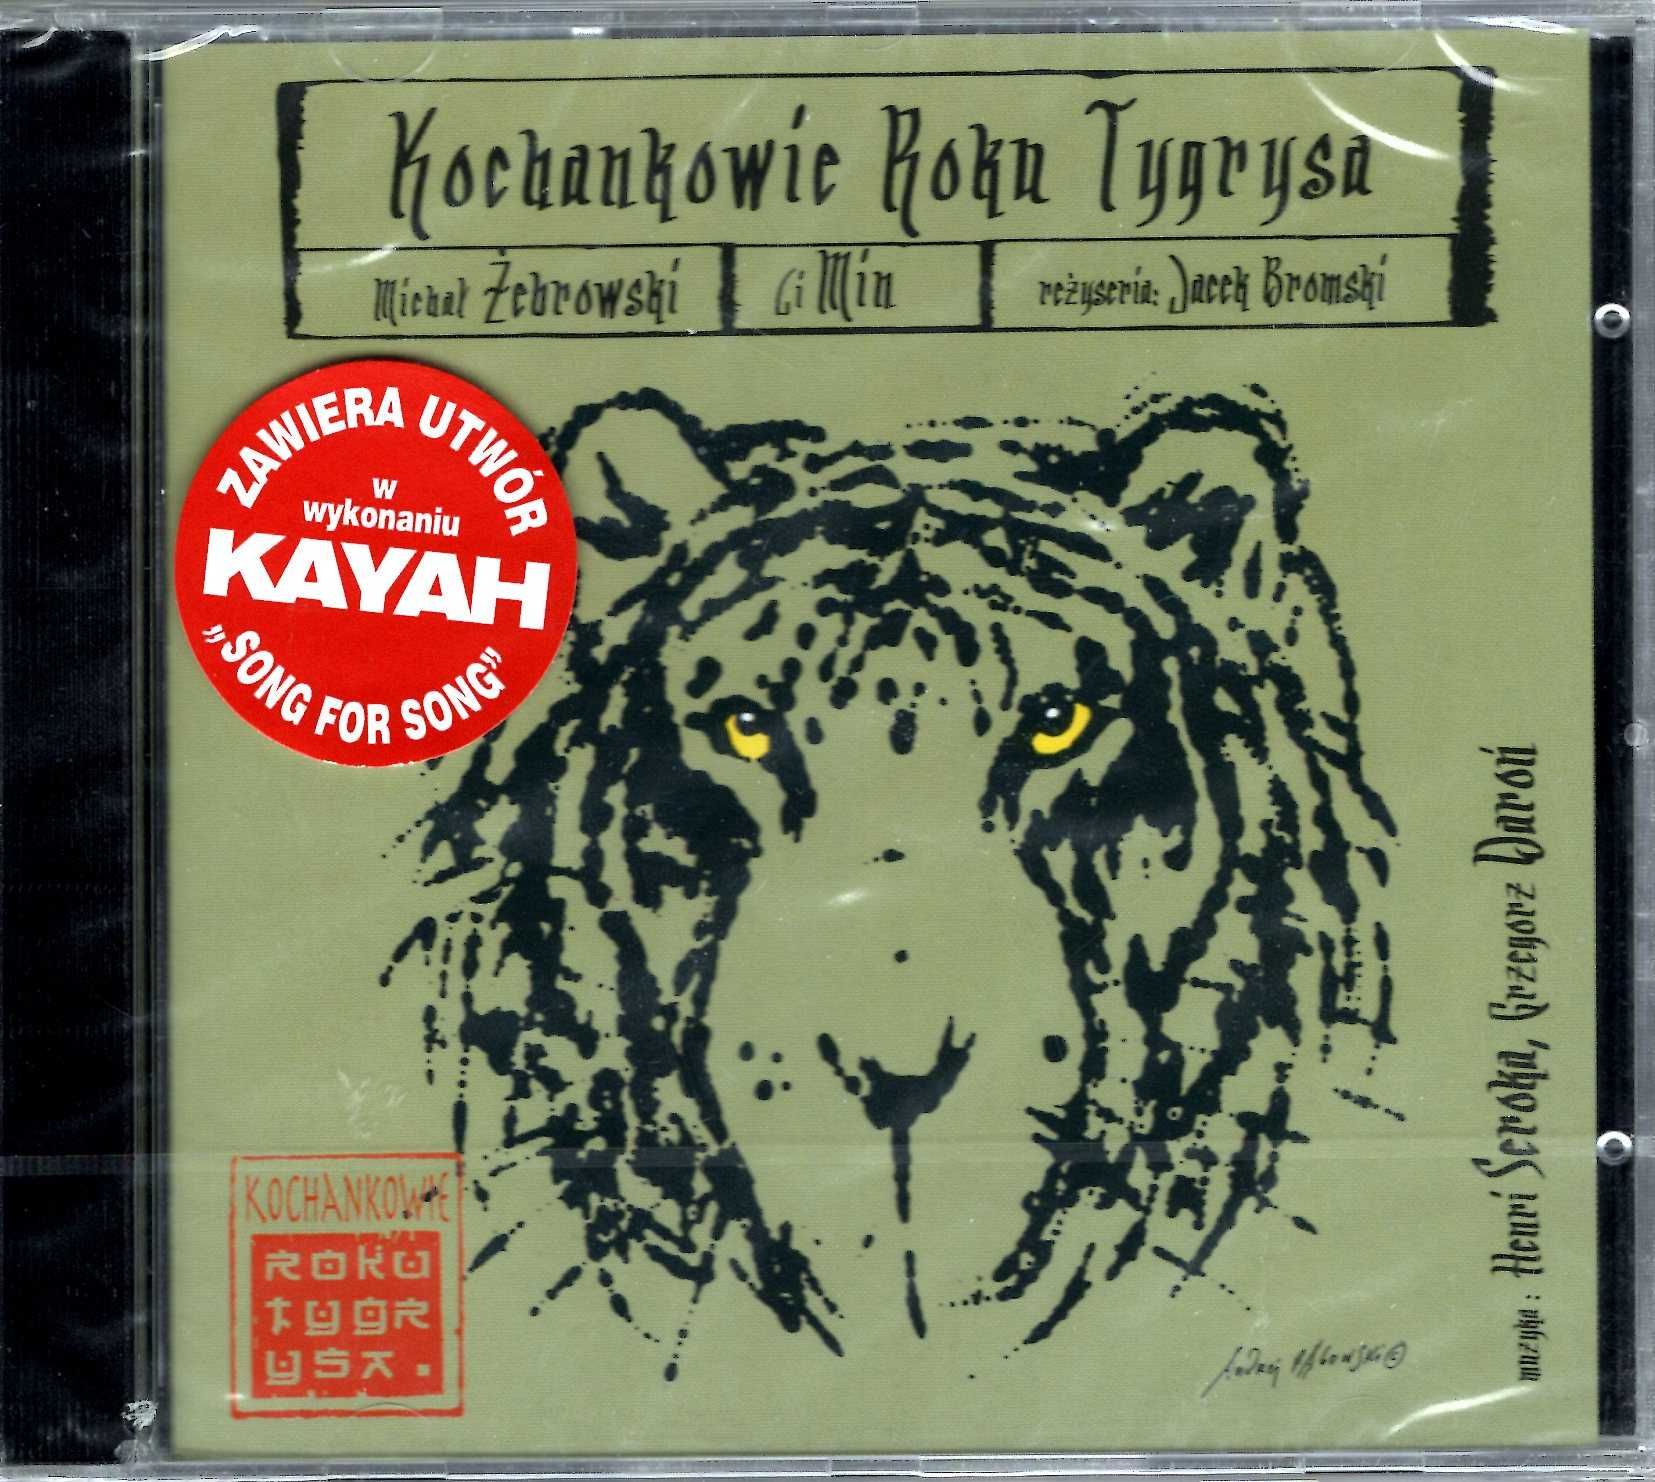 Henri Seroka Grzegorz Daroń - Kochankowie Roku Tygrysa (CD)